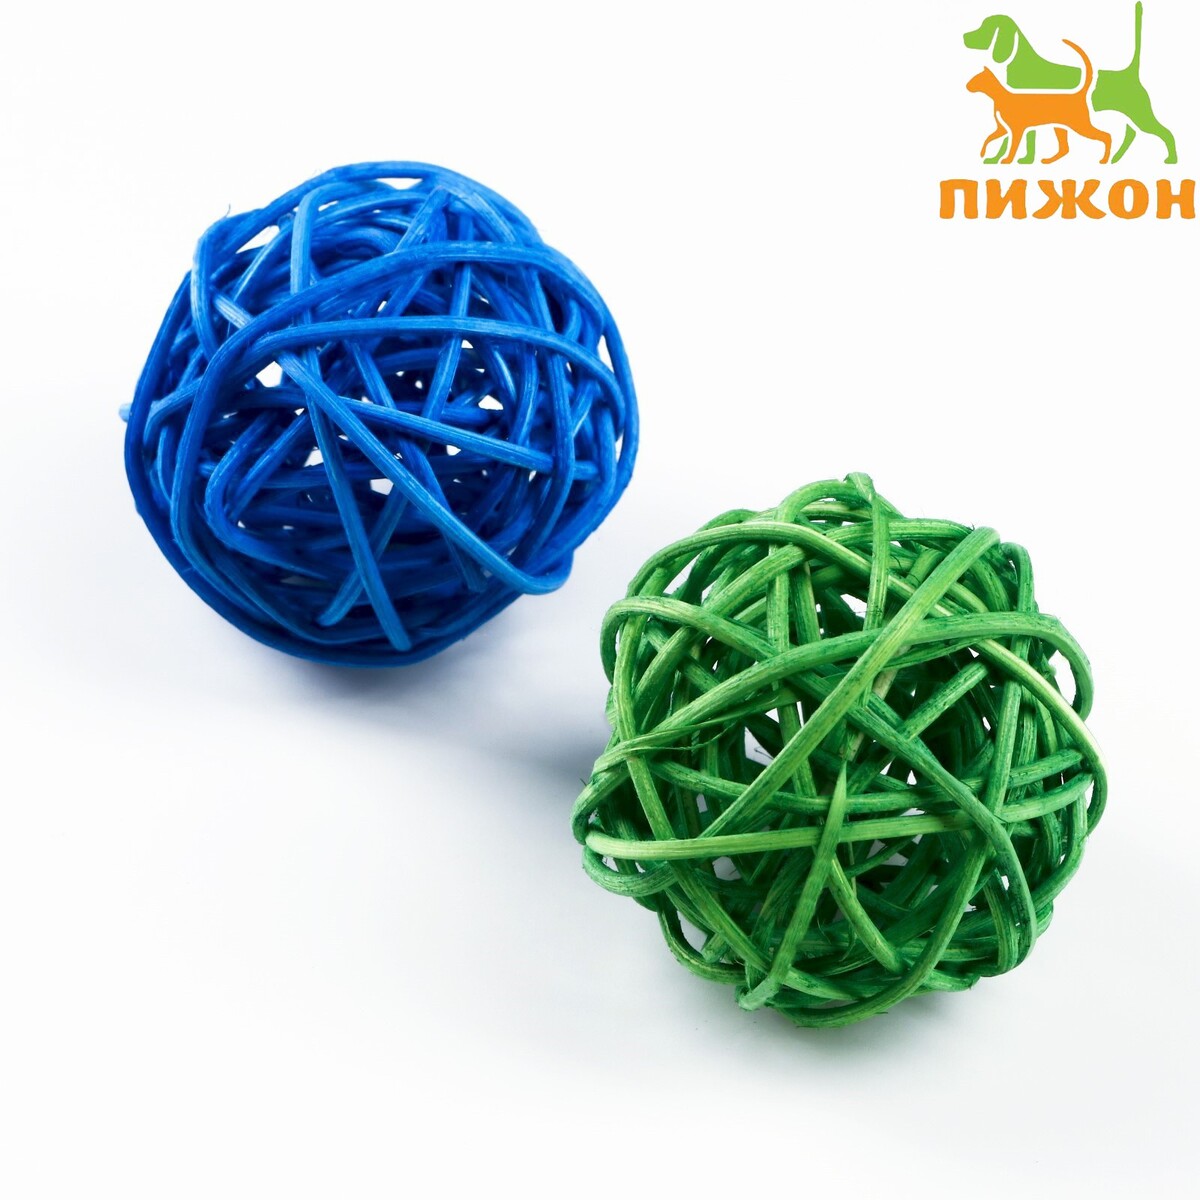 Набор из 2 плетеных шариков из лозы без бубенчиков, 5 см, синий/зеленый набор кашпо плетеных из 3шт d35xh21см серый ротанг